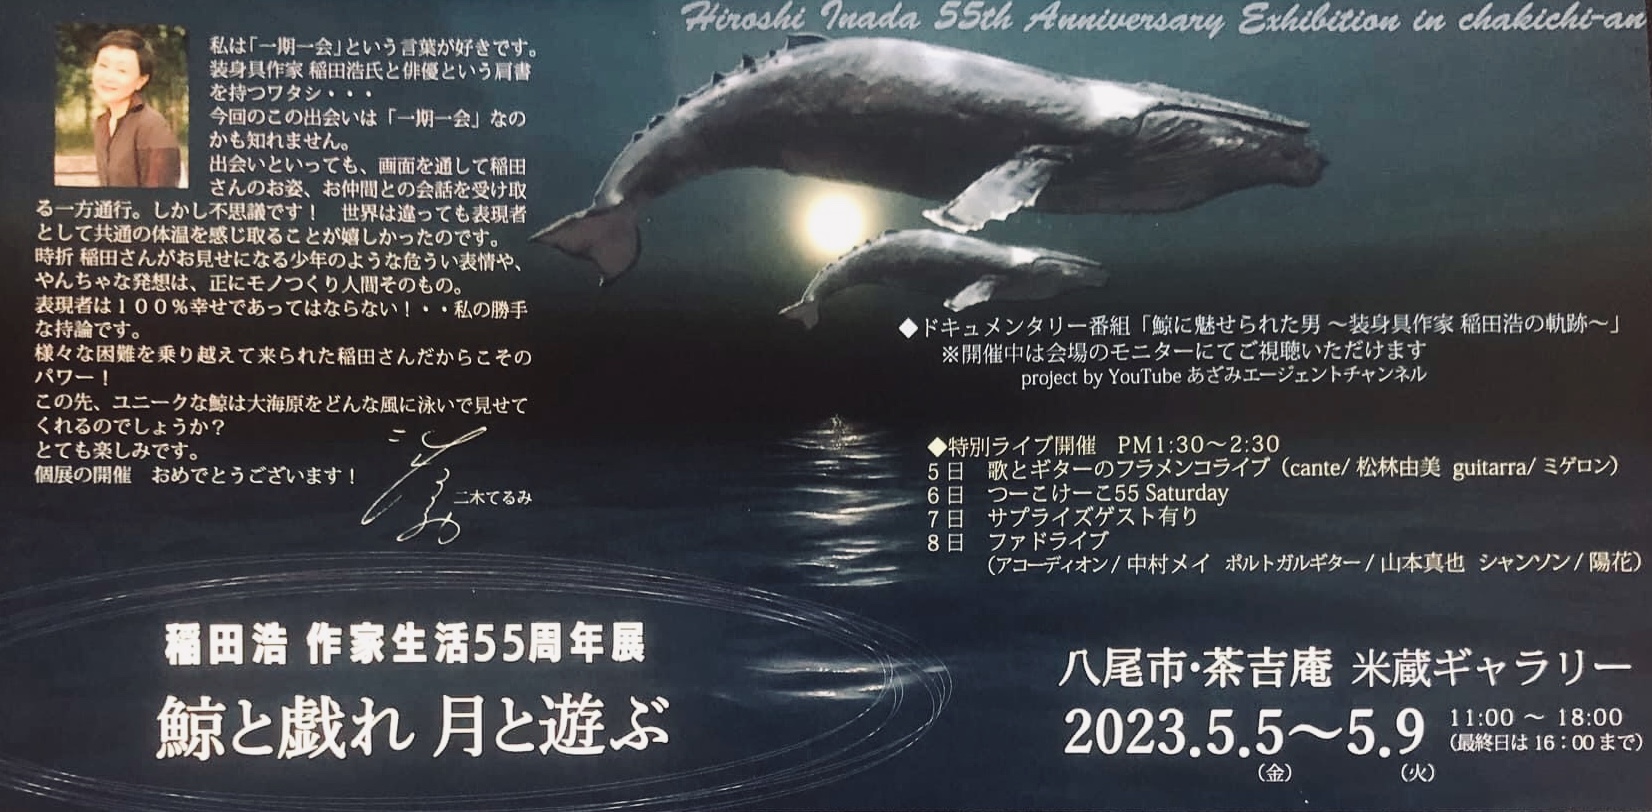 【2023.5.5-5.9】稲田浩 作家生活55周年記念展『鯨と戯れ 月と遊ぶ』